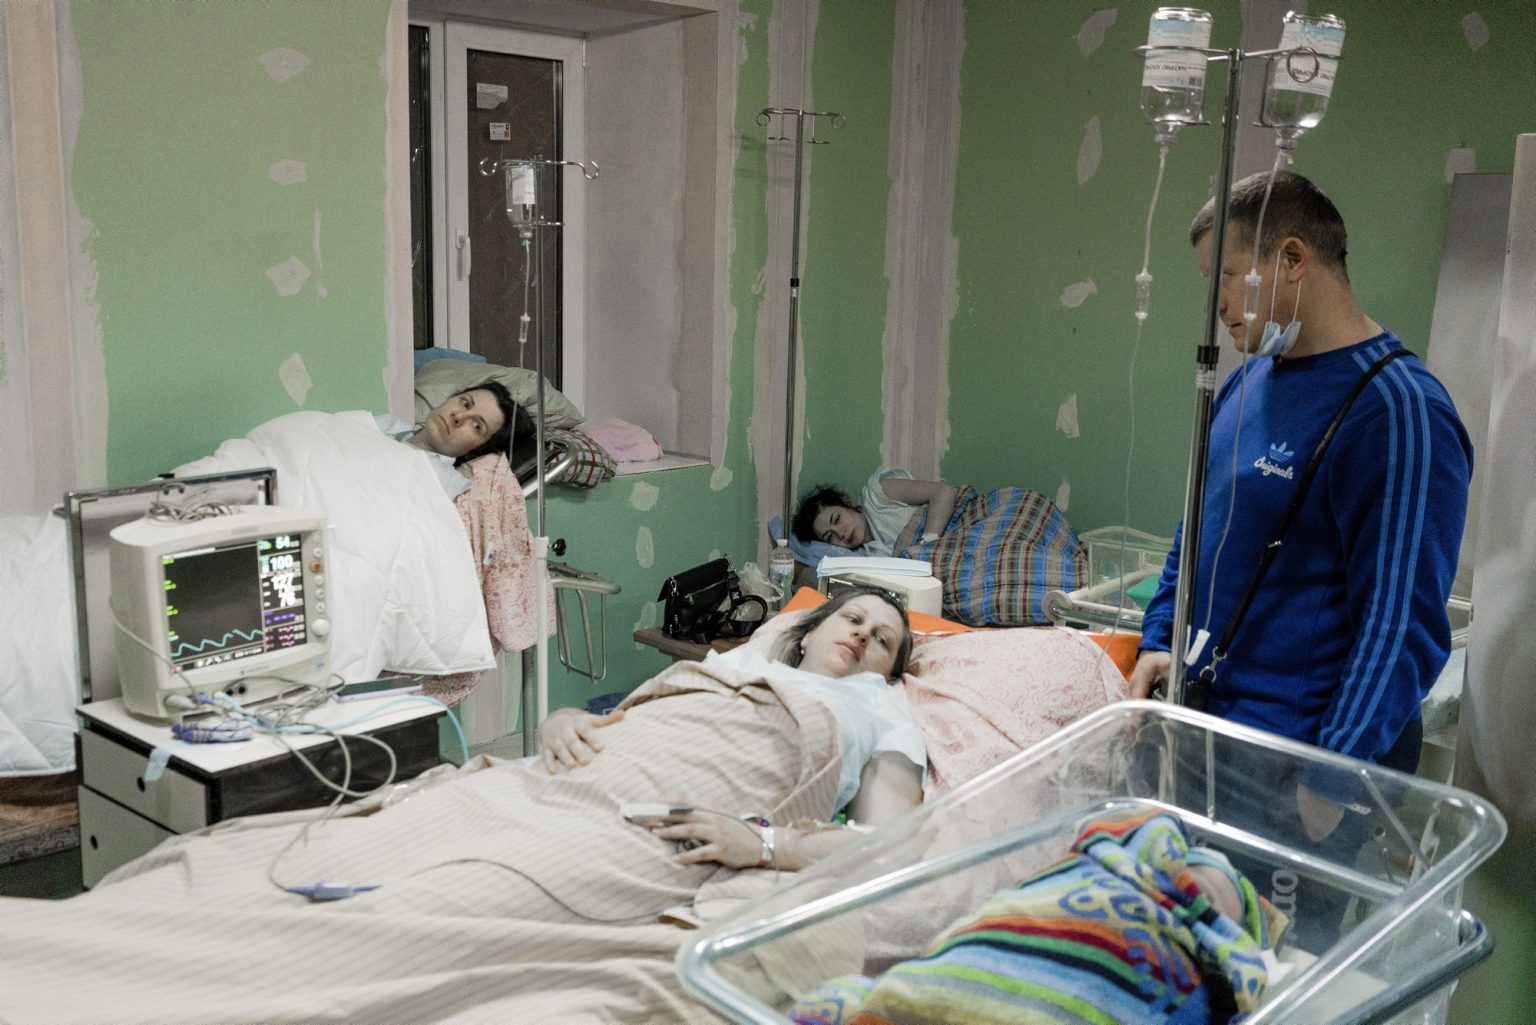 01563780 UKRAINE, Kyiv. March 02, 2022 - Women lay in a maternity hospital's basement used as a bomb shelter, in Kyiv.                   As Russia invades Ukraine, thousands of Ukrainians are fleeing the country to find shelter in bordering countries. 
---------
Con l'invasione russa ai danni dell'Ucraina, migliaia di ucraini sono in fuga dalla nazione d'origine per cercare rifugio nelle nazioni confinanti.*** SPECIAL   FEE   APPLIES *** *** Local Caption *** 01563780